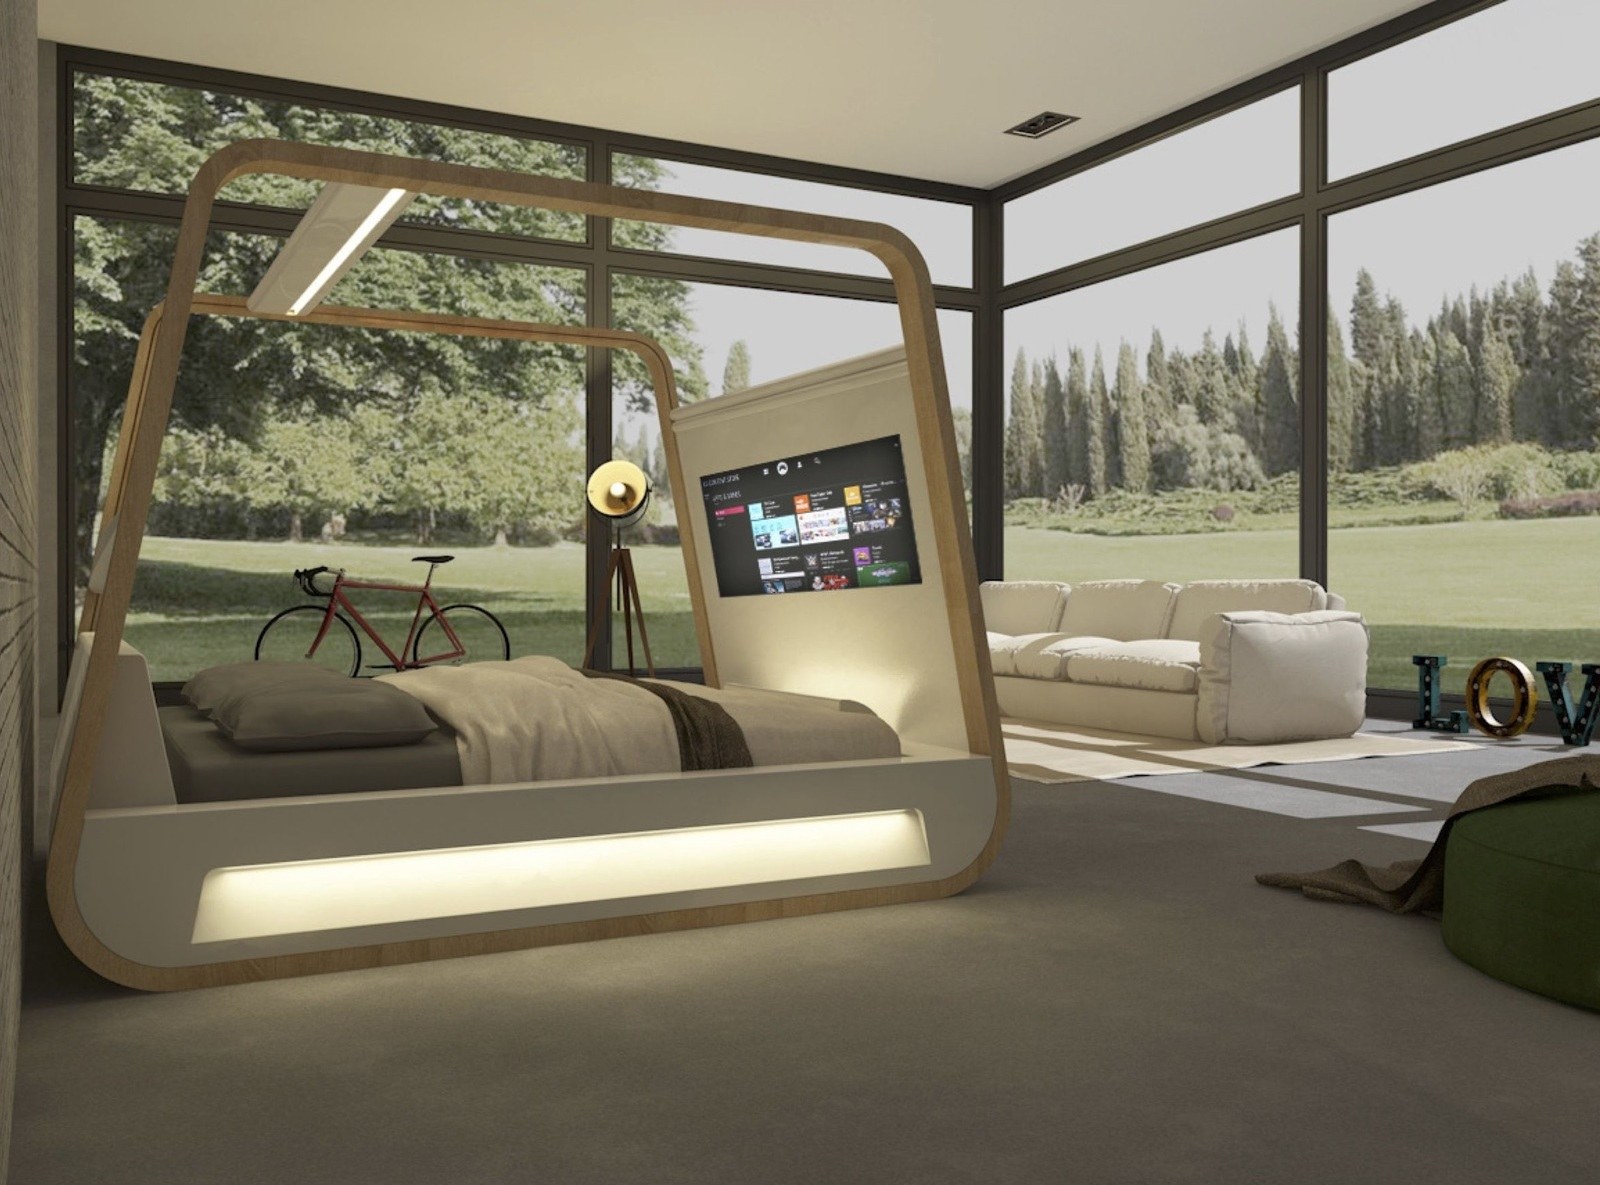  Thiết kế nội thất phòng ngủ với đồ dùng công nghệ cao